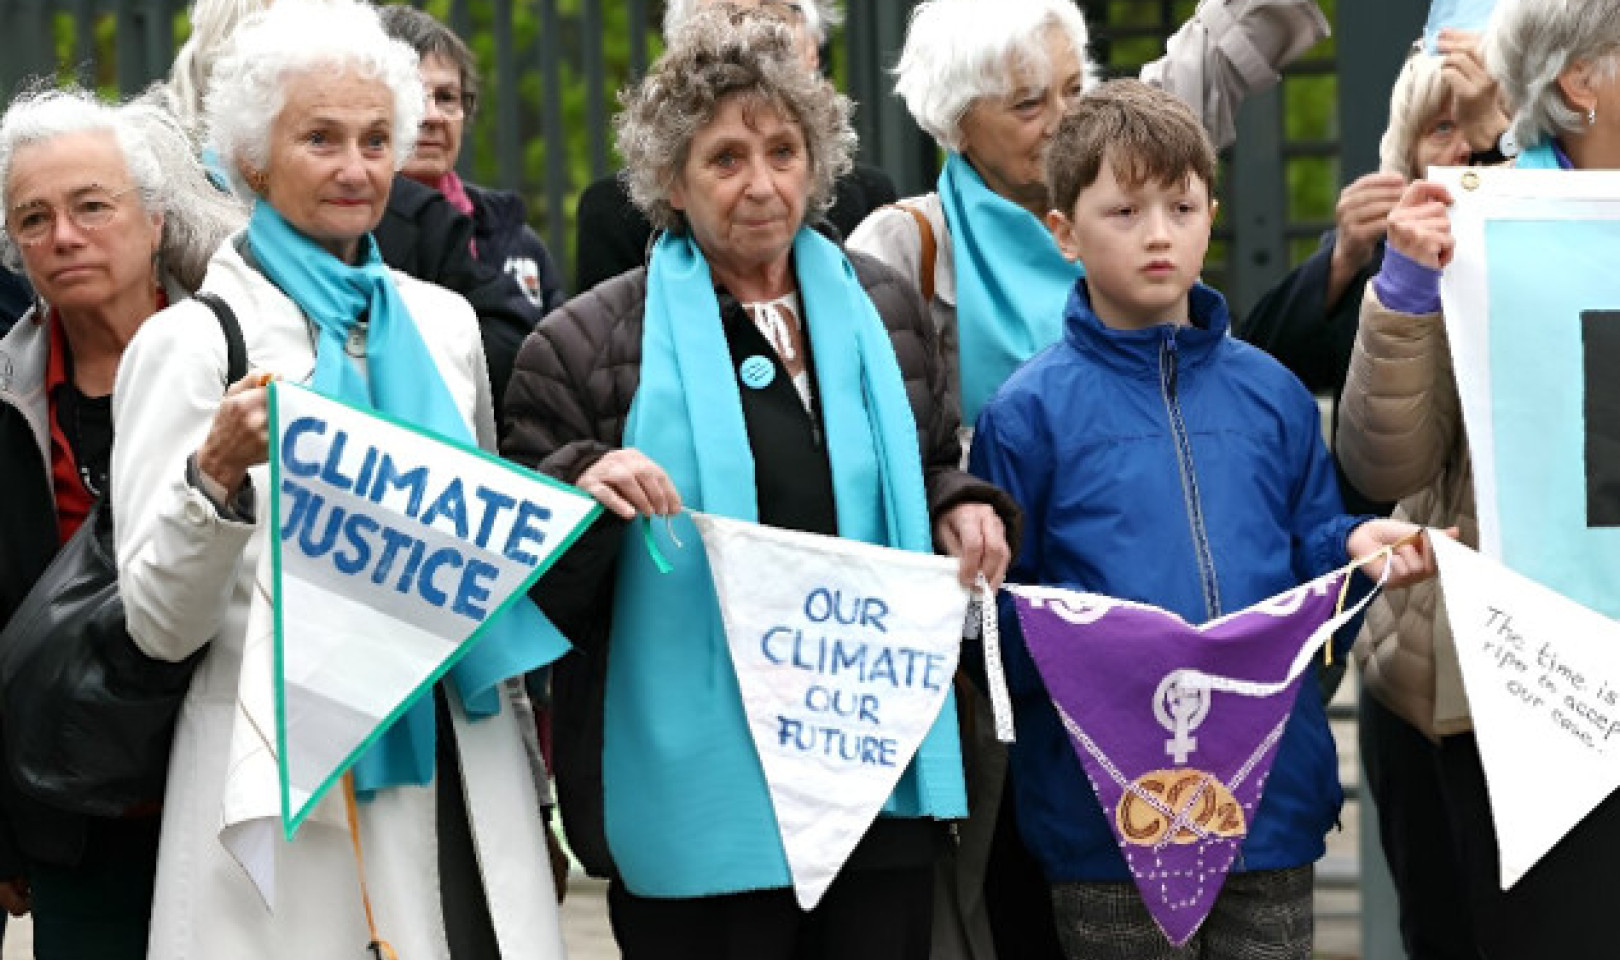 Sveitsiske kvinner setter historisk presedens i juridisk kamp om klimaendringer